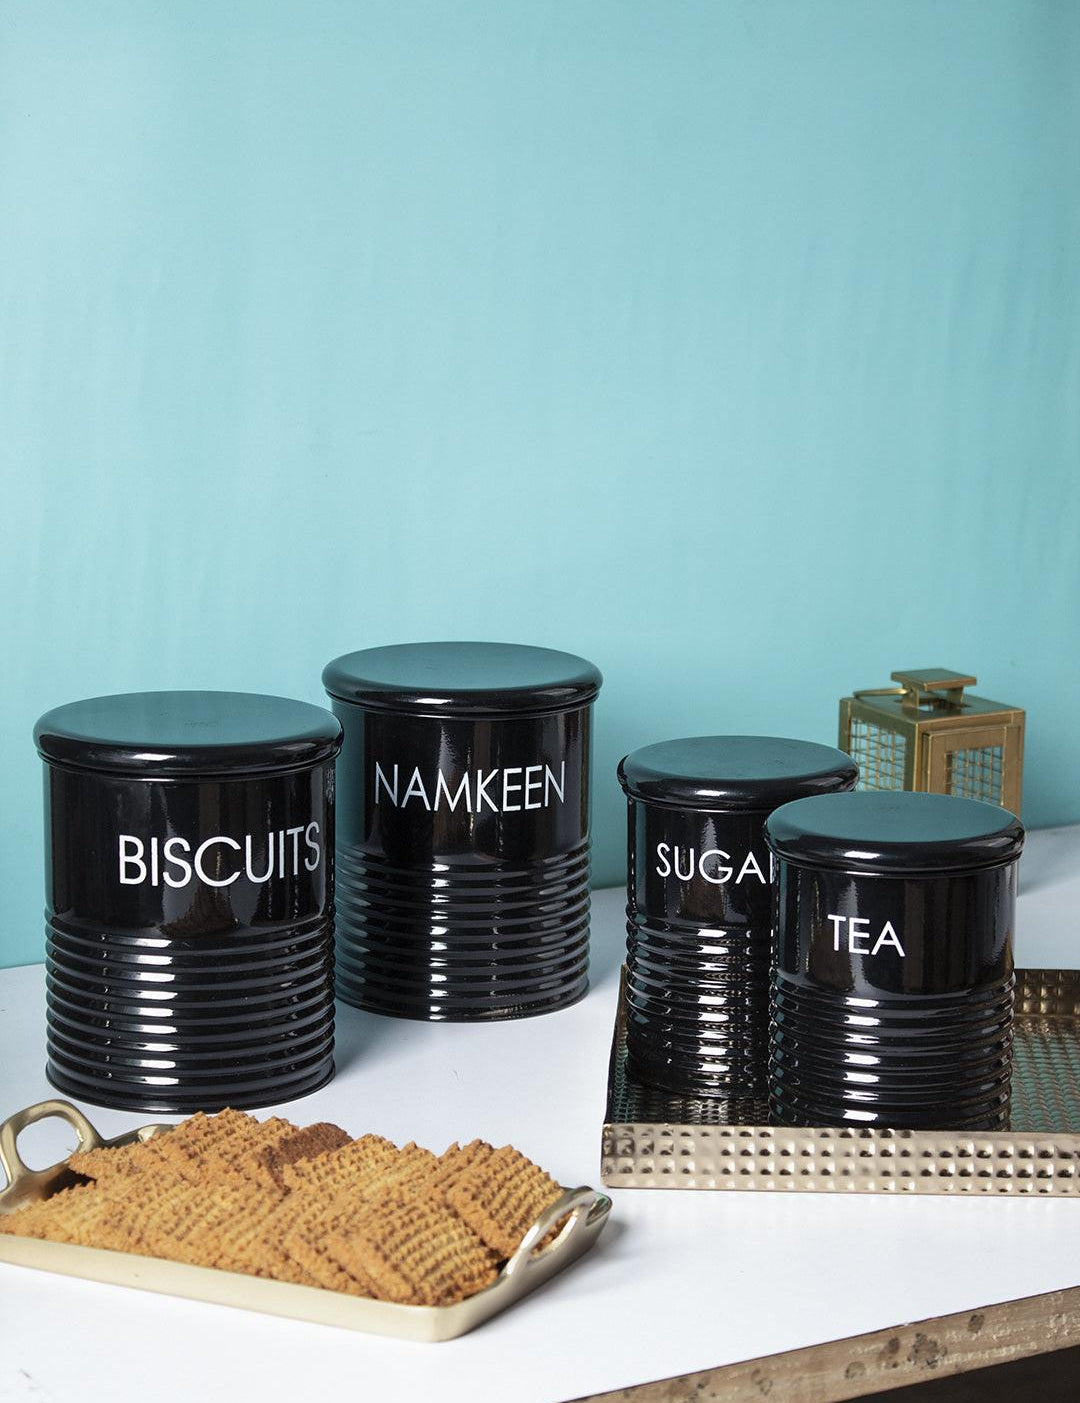 Tea & Sugar Jar (Each 900 Ml) +  Biscuits & Namkeen Jar (Each 1700 Ml) - Black, Set Of 4